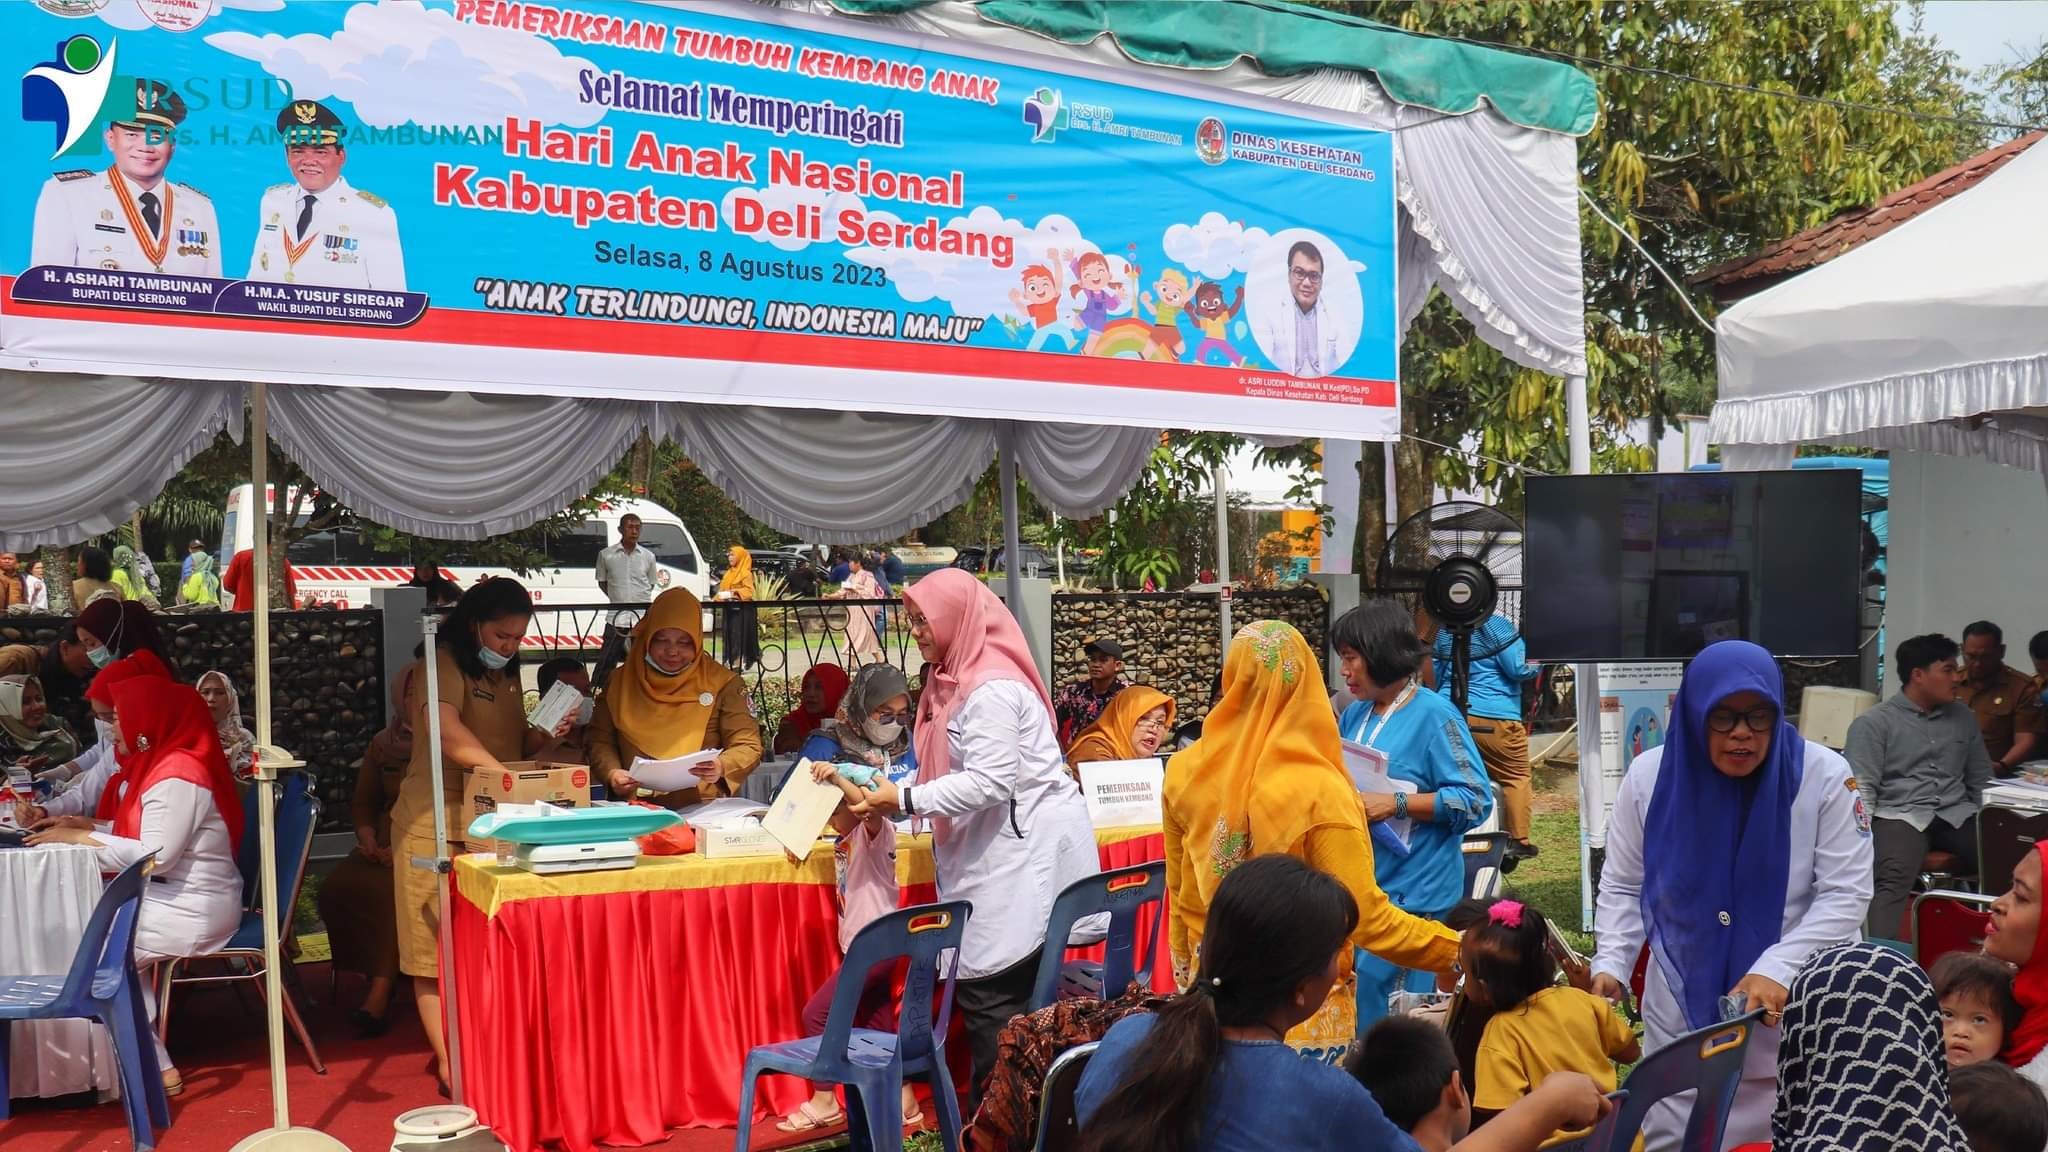 RSUD Drs. H. AMRI TAMBUNAN Ikut Memeriahkan Acara Hari Anak Nasional 2023